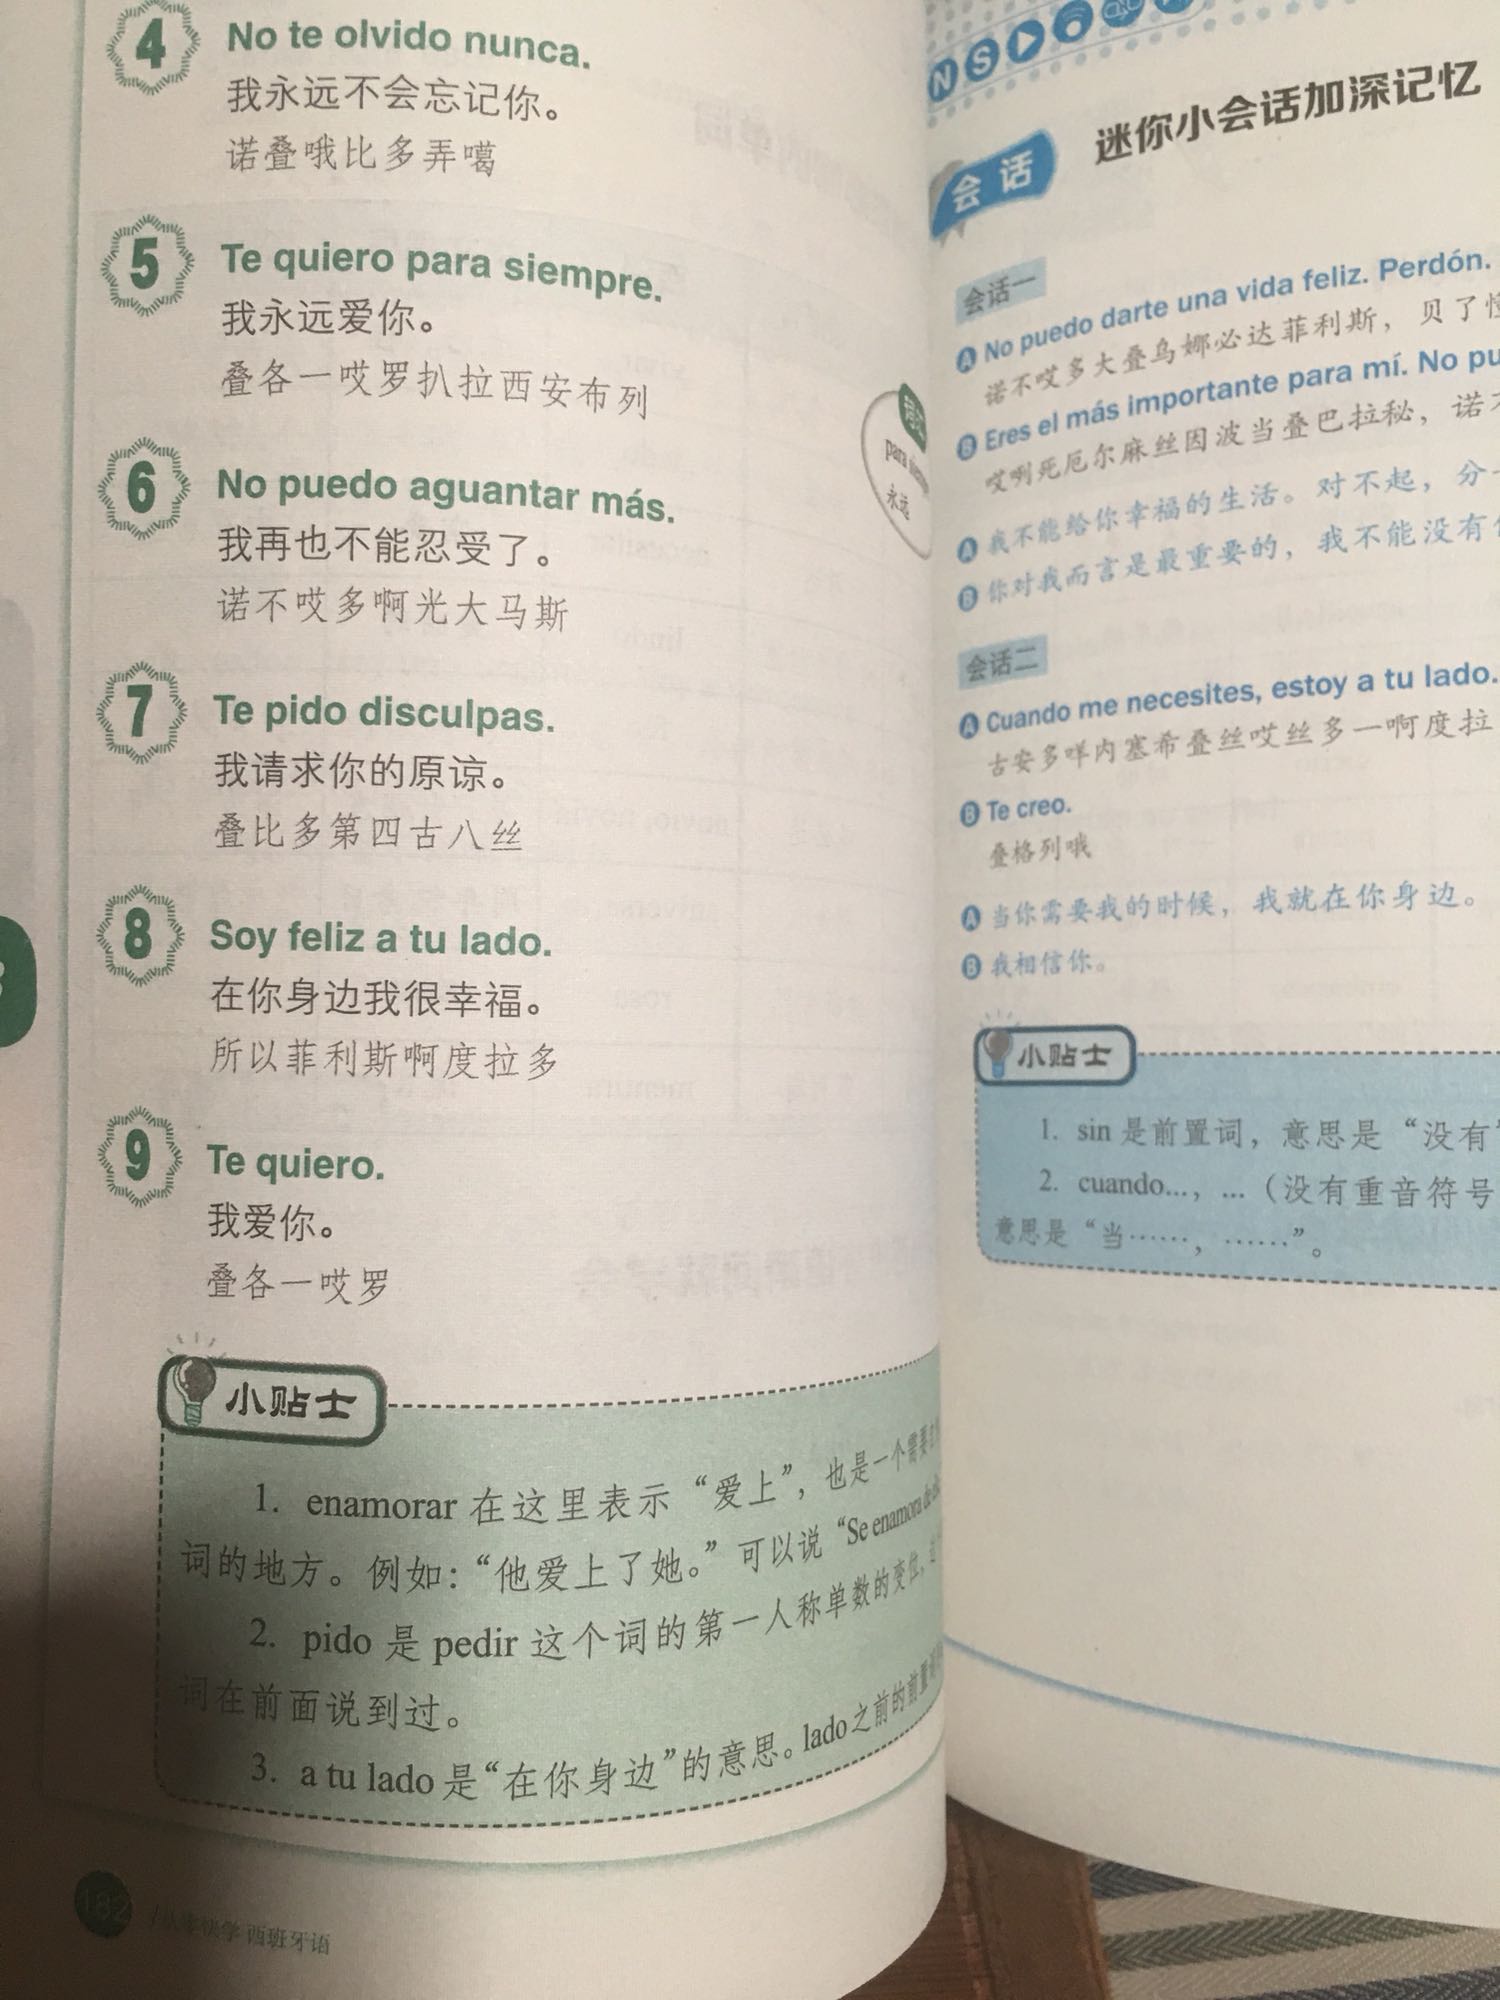 西班牙语看上去还是很难，这个主要是跟这个中文差别太大，需要用心学习，那我给你们多照几张照片，你们看一下，了解一下，书比较大